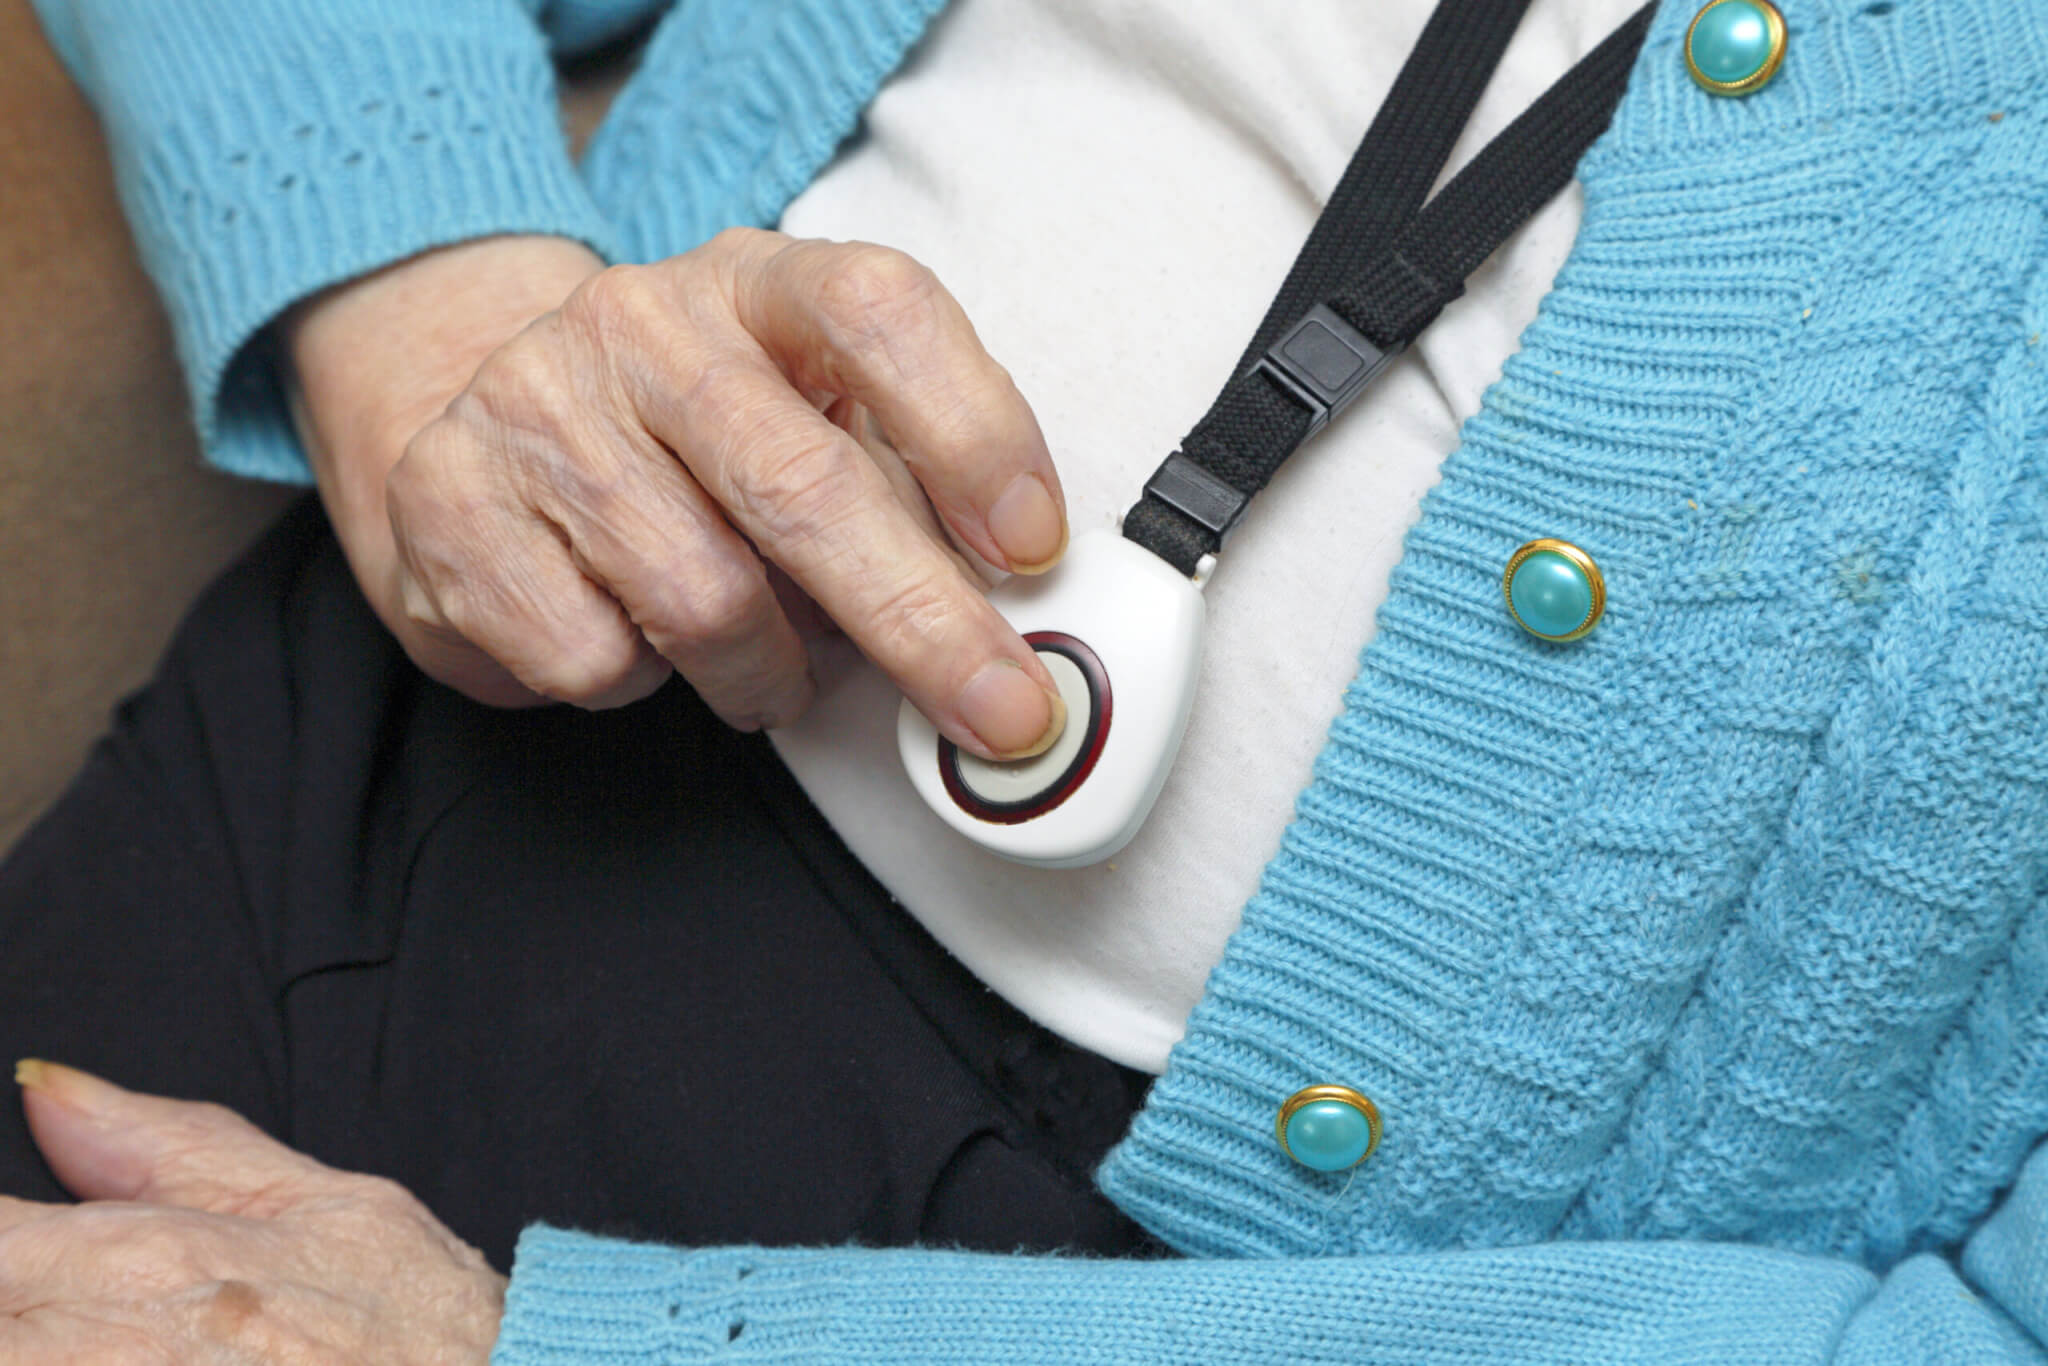 A senior pressing a medical alert button